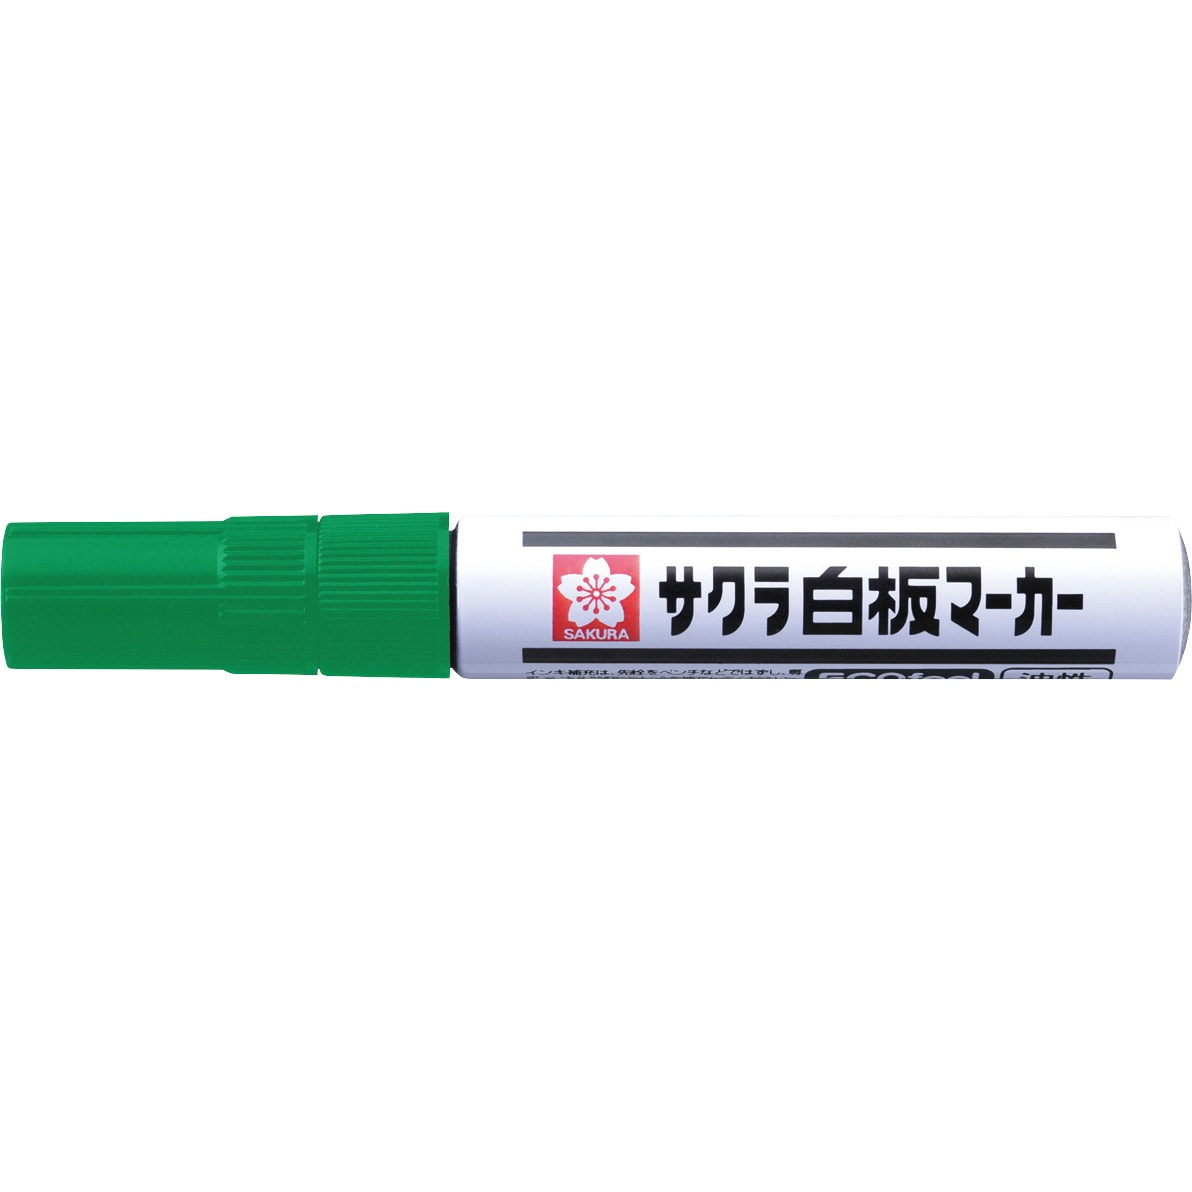 サクラクレパス ホワイトボードマーカー 中字 エコ 緑 10本 WBKE#29(10